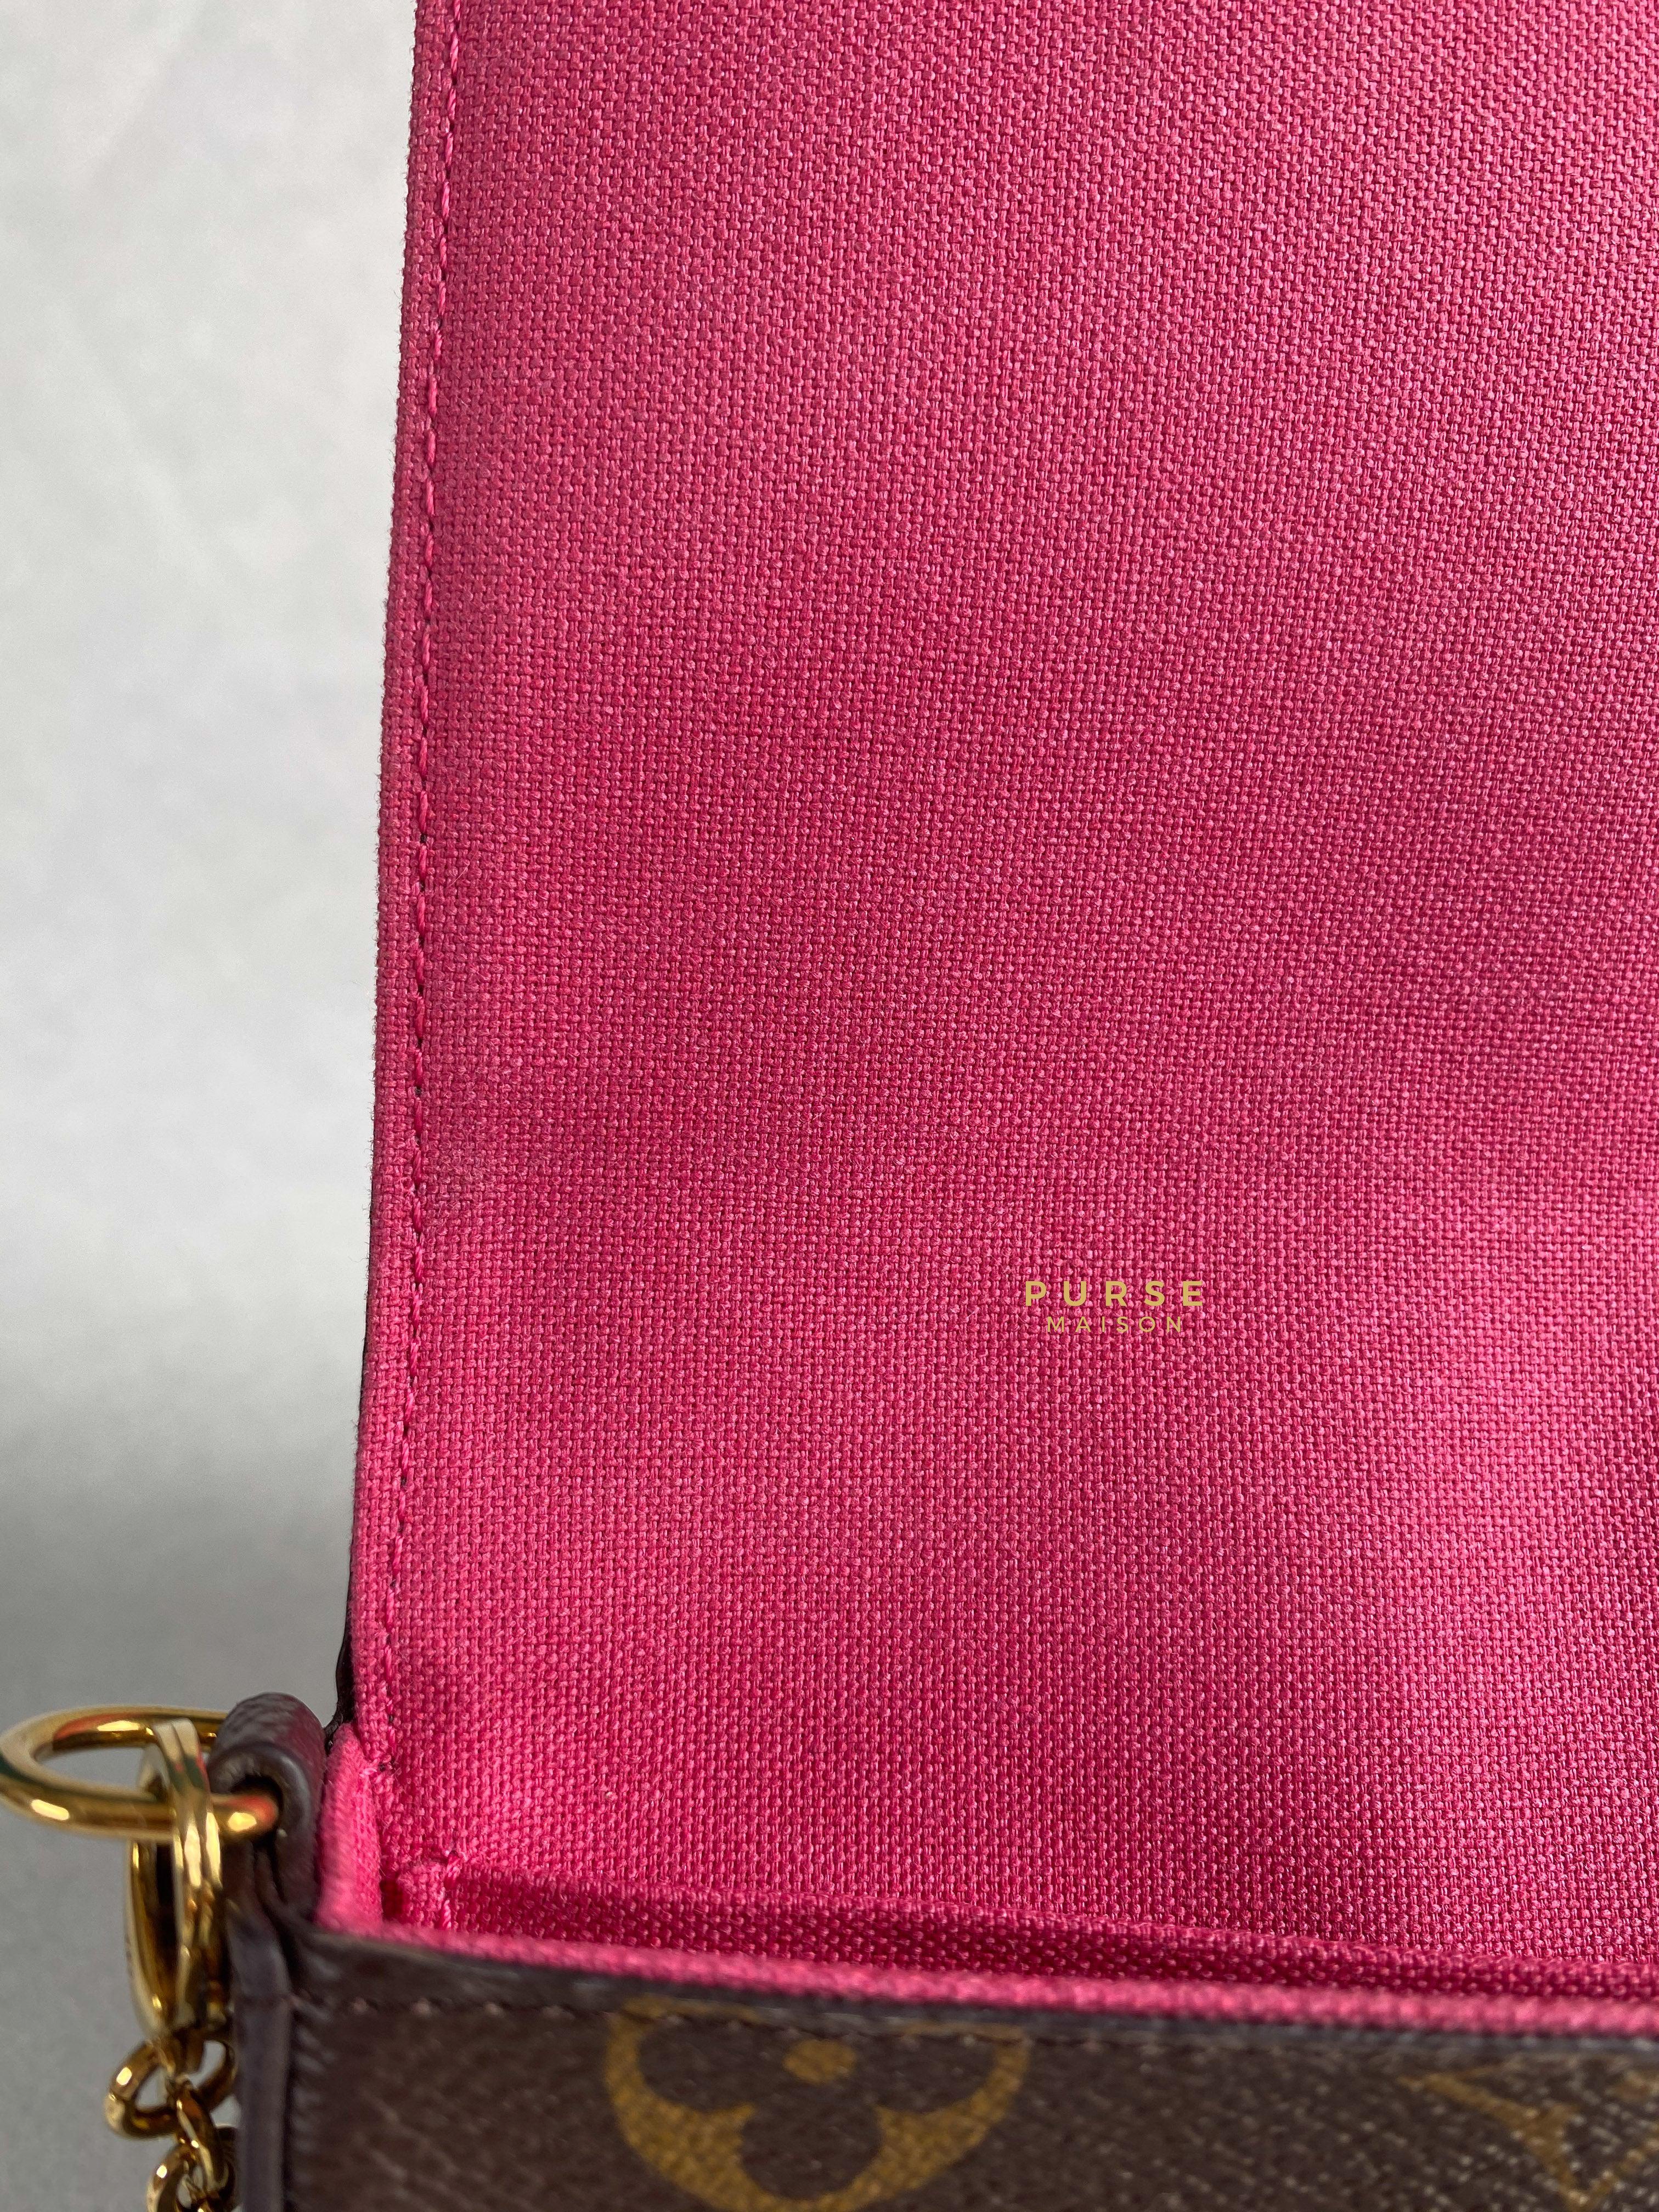 Louis Vuitton Felicie Pochette Christmas Limited Edition Monogram (Microchip) | Purse Maison Luxury Bags Shop